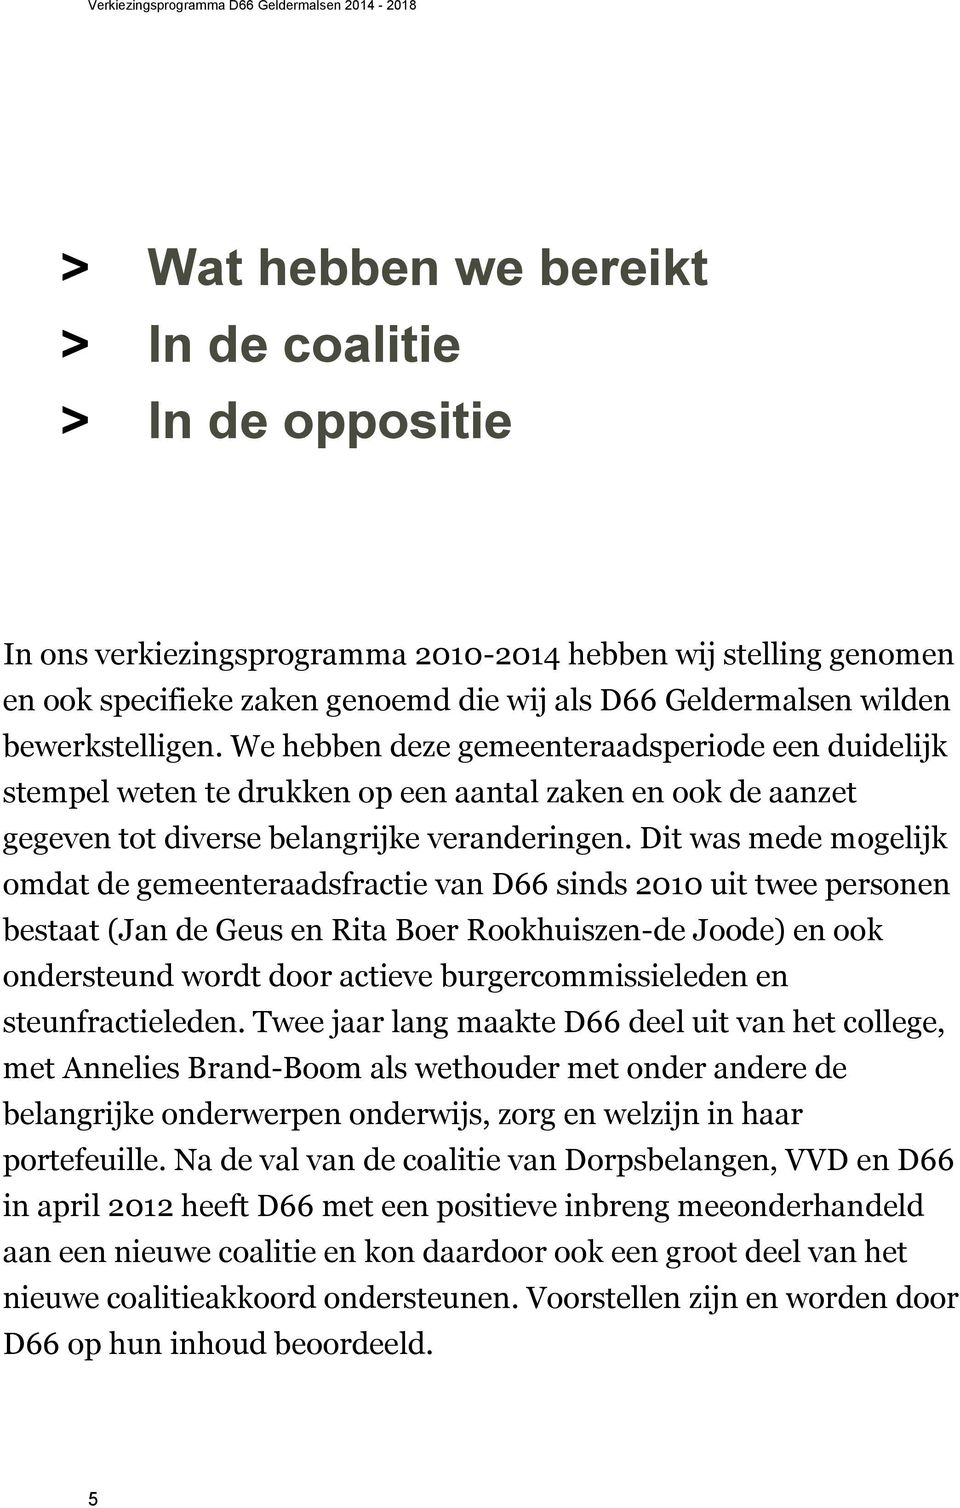 Dit was mede mogelijk omdat de gemeenteraadsfractie van D66 sinds 2010 uit twee personen bestaat (Jan de Geus en Rita Boer Rookhuiszen-de Joode) en ook ondersteund wordt door actieve